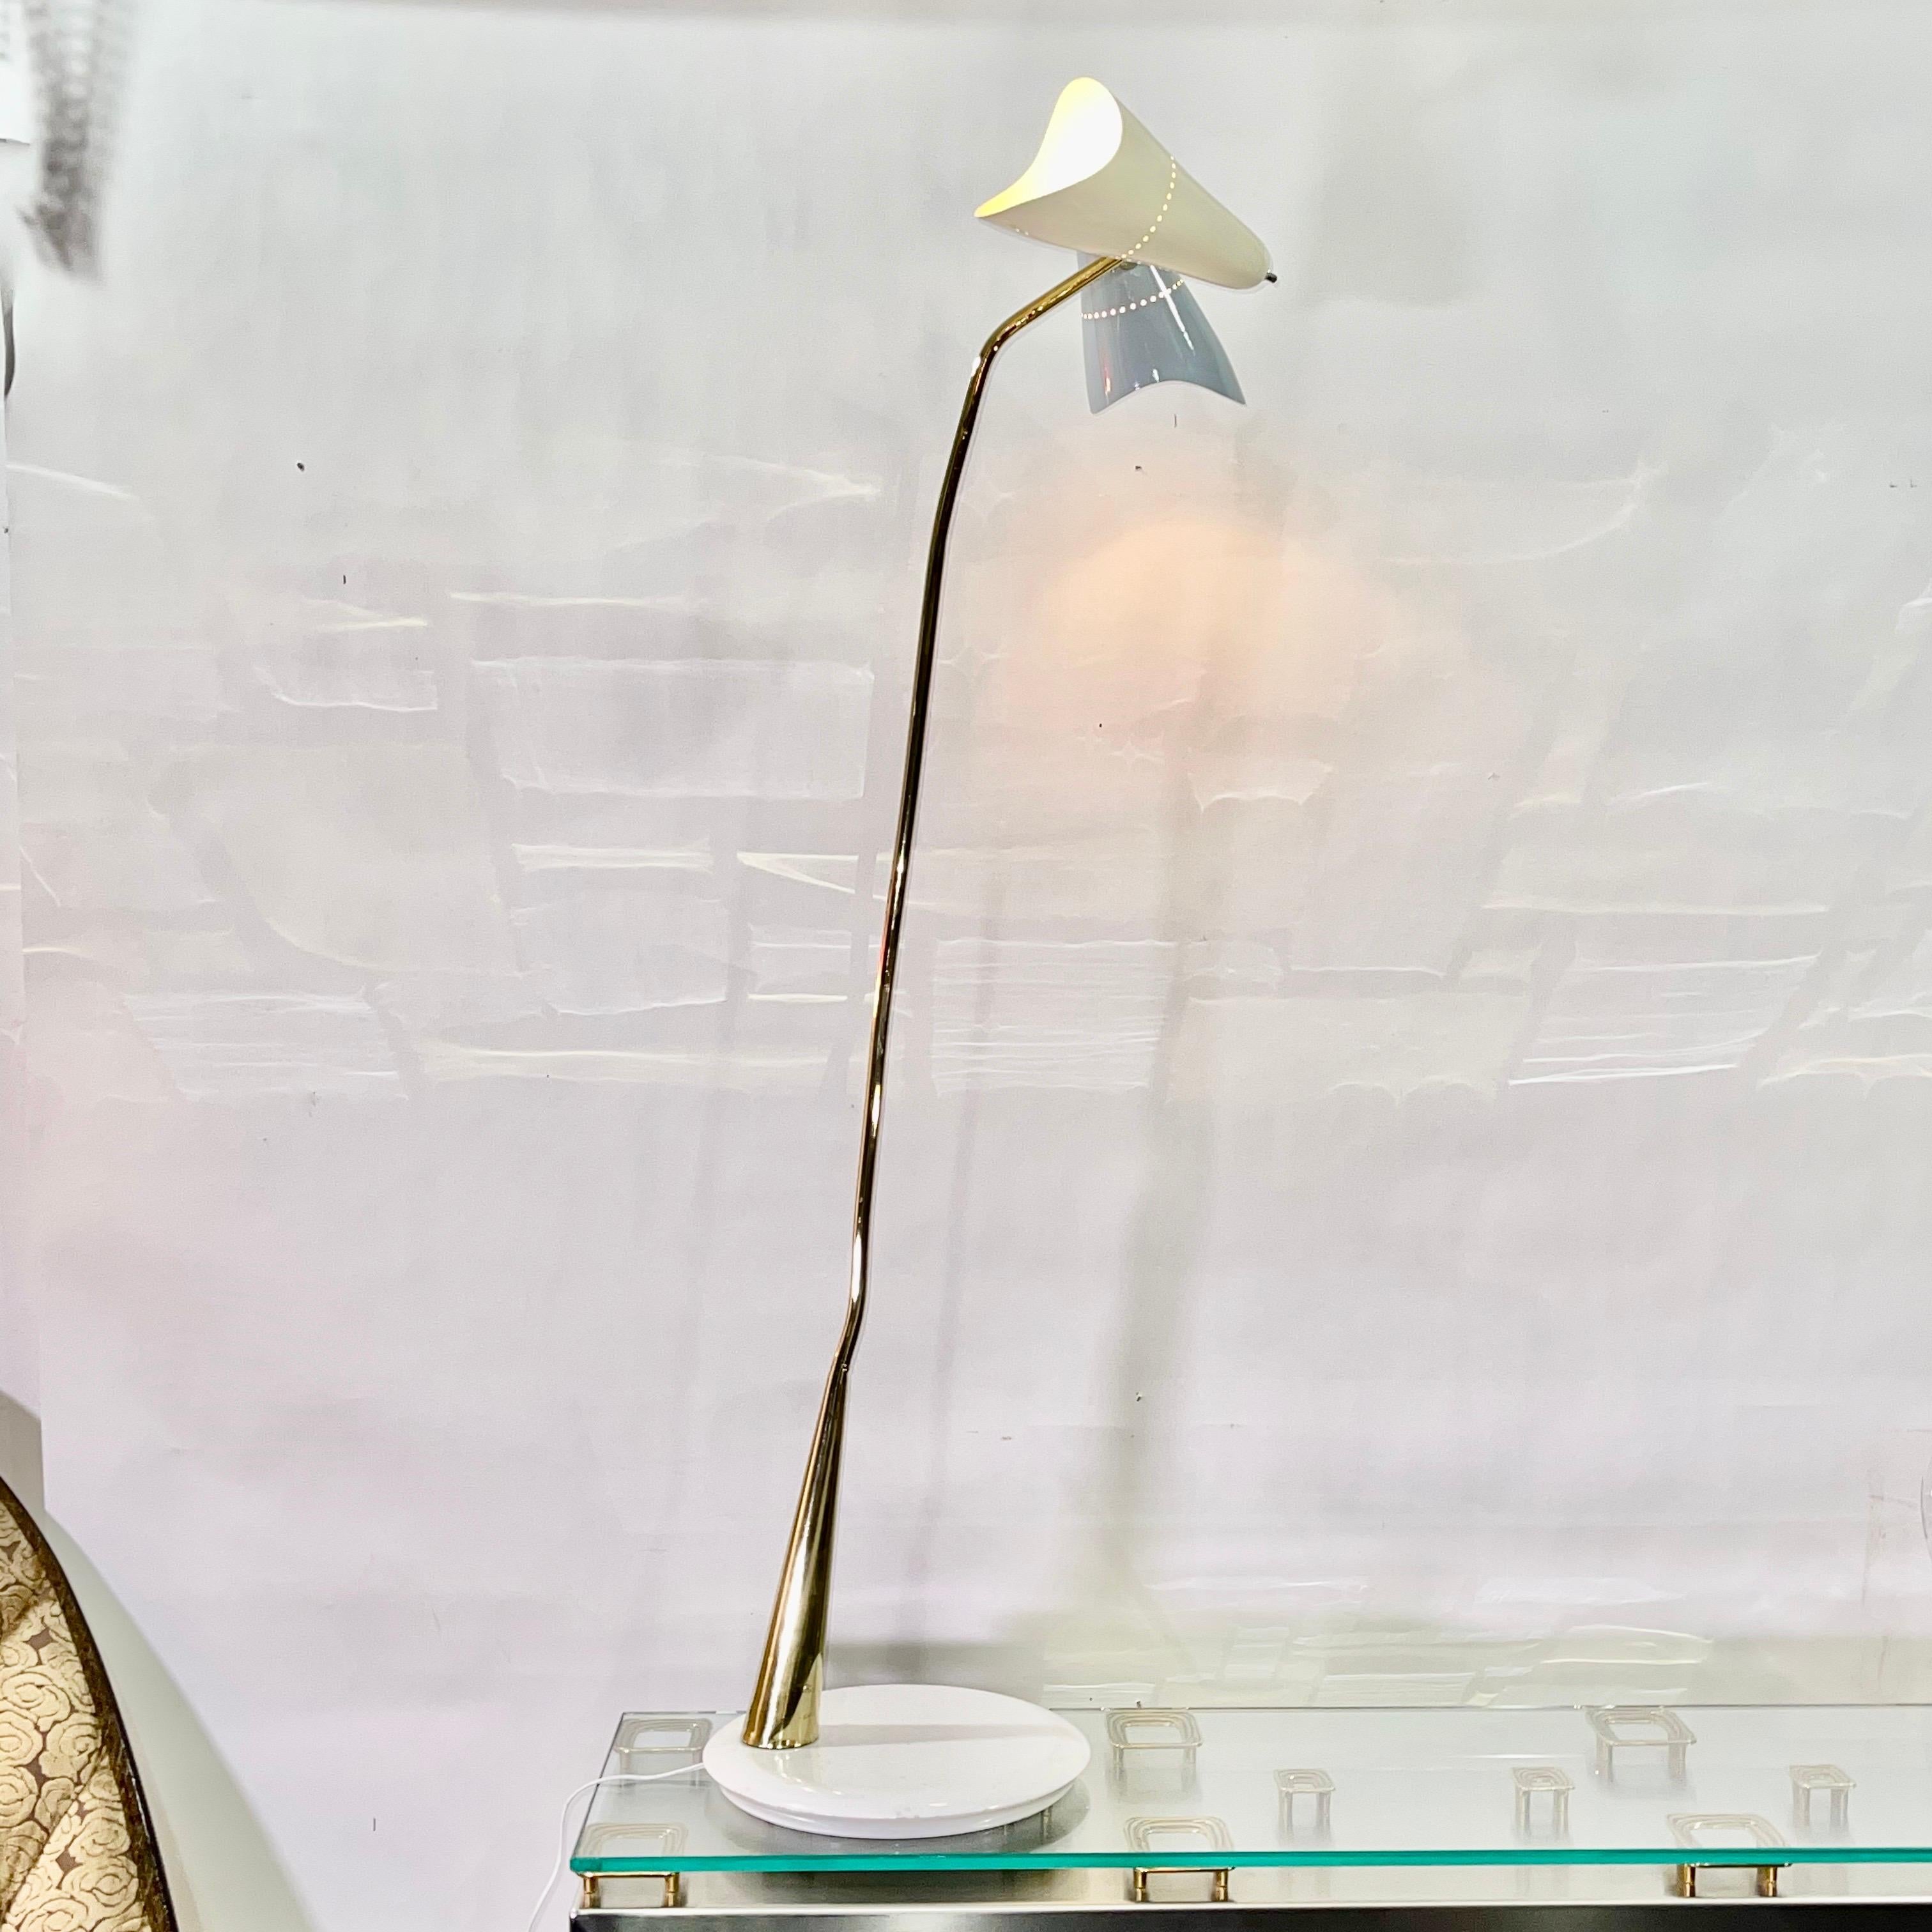 Oscar Torlasco (1934-2004) designed this double headed floor lamp for Lumen Società Anonima apparecchi di illuminazione razionale, via verdi 7, Milano.
Slanted and sinewy brass stem on a distinctively cut round 13 inch diameter white marble base